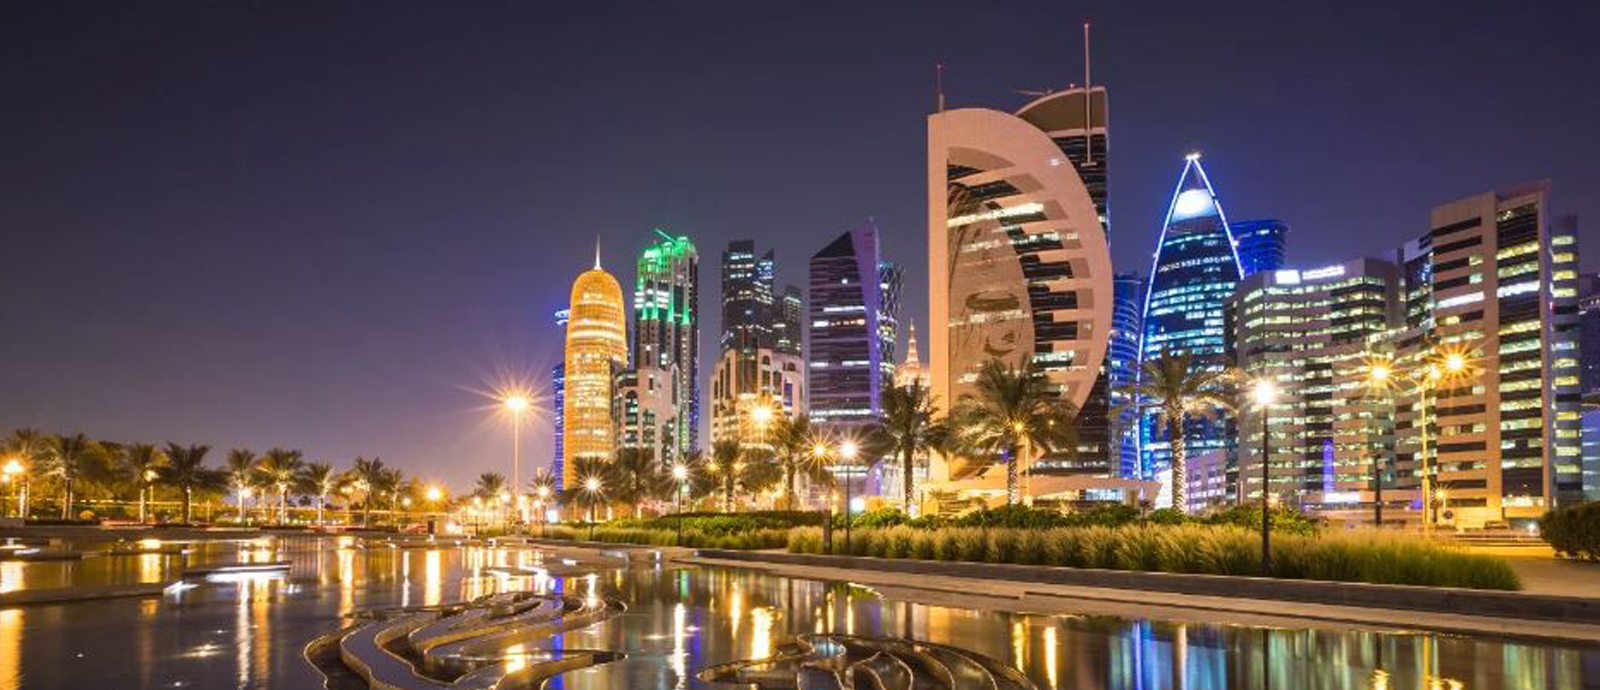  قطر تستقبل أعلى عدد من الزائرين في شهر واحد